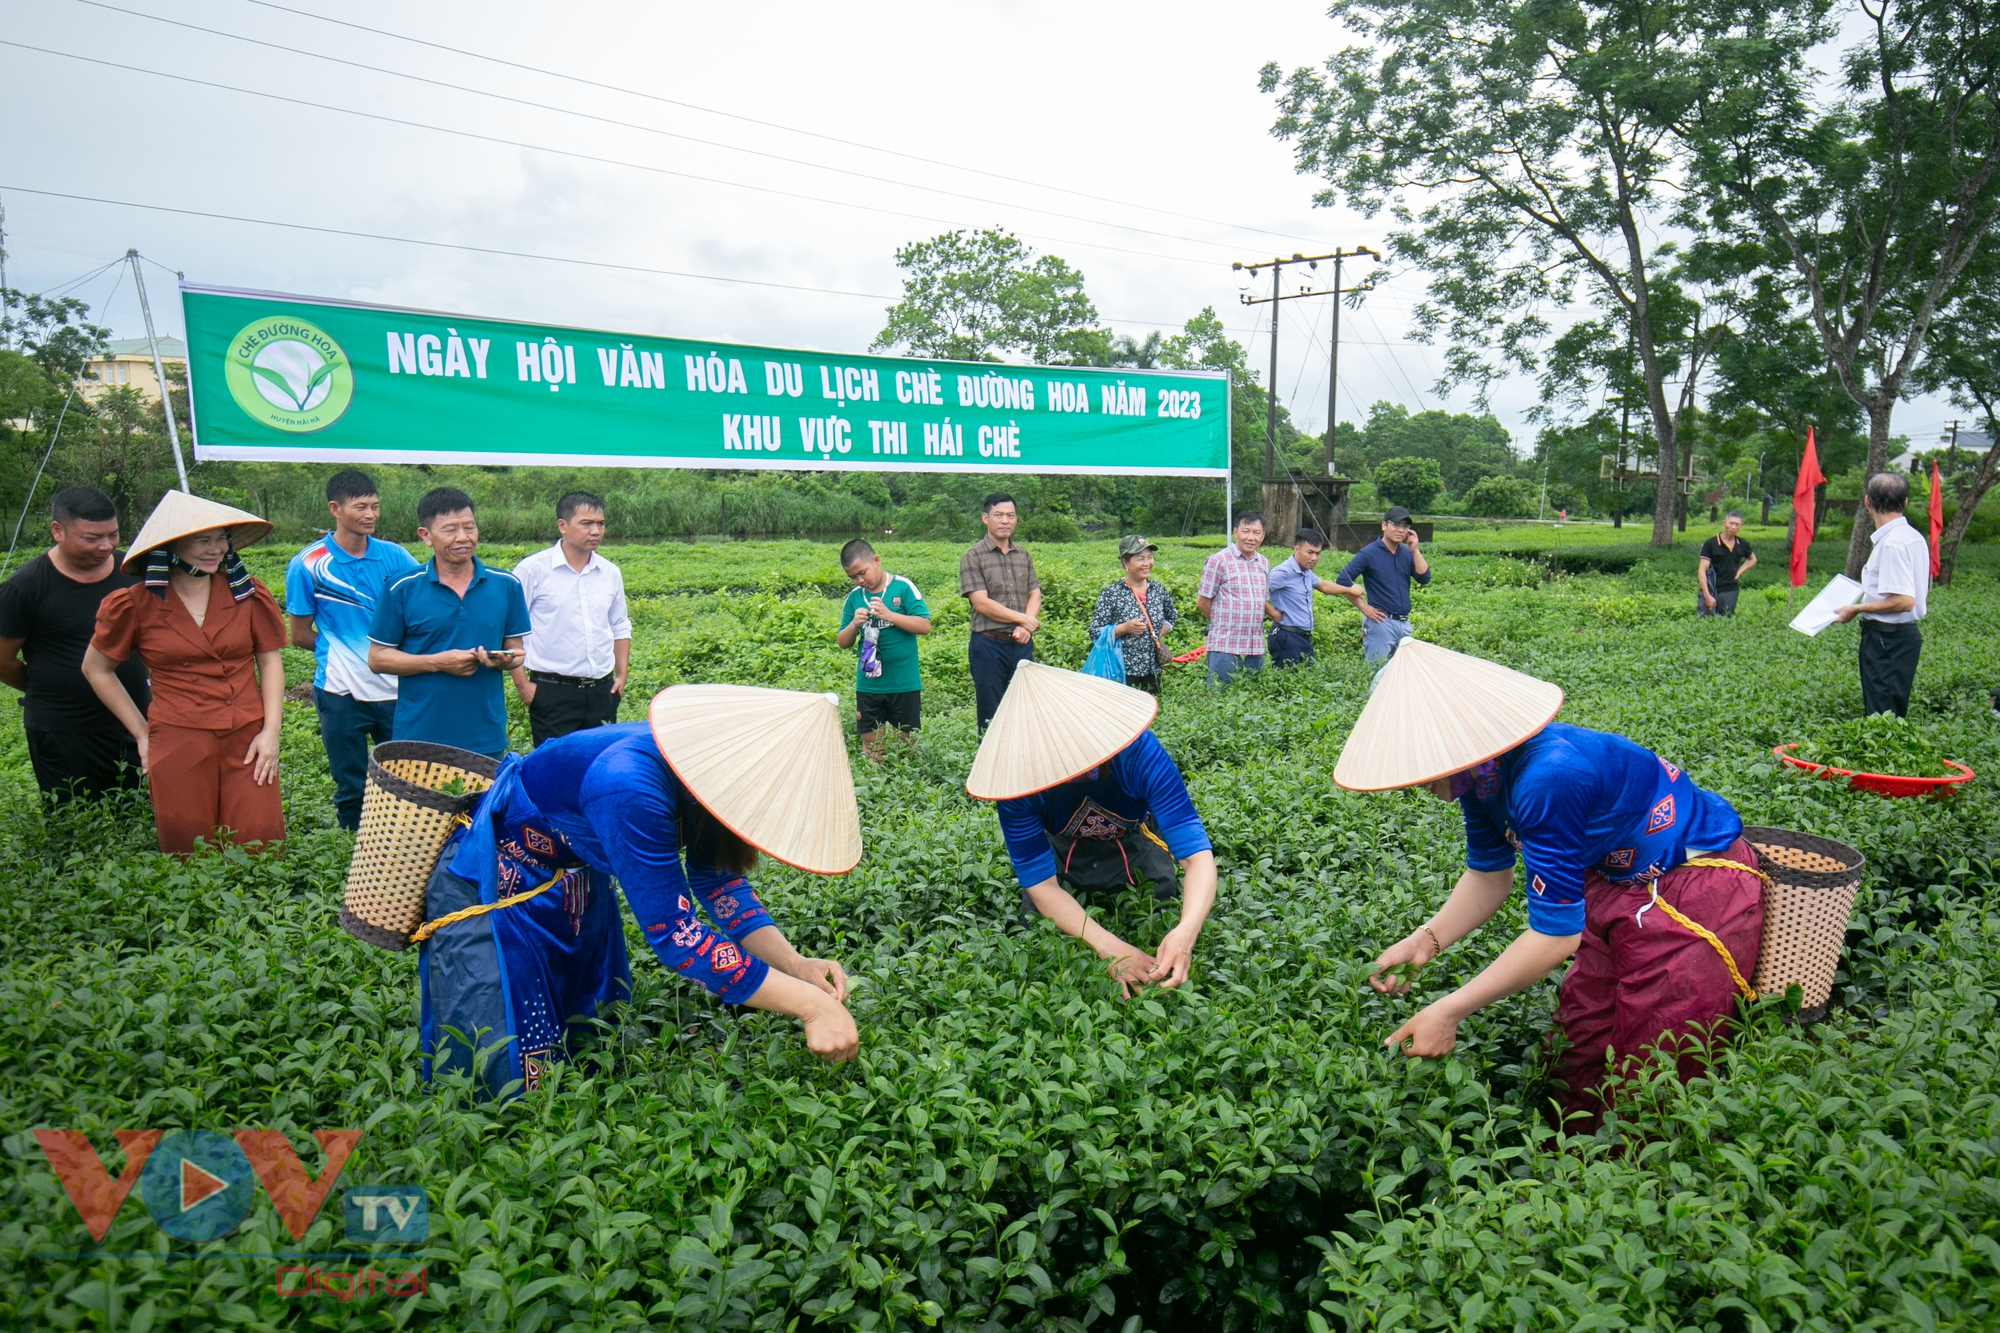 Quảng Ninh: Tưng bừng cuộc thi hái chè tại ngày hội văn hóa du lịch trà Đường Hoa - Ảnh 8.